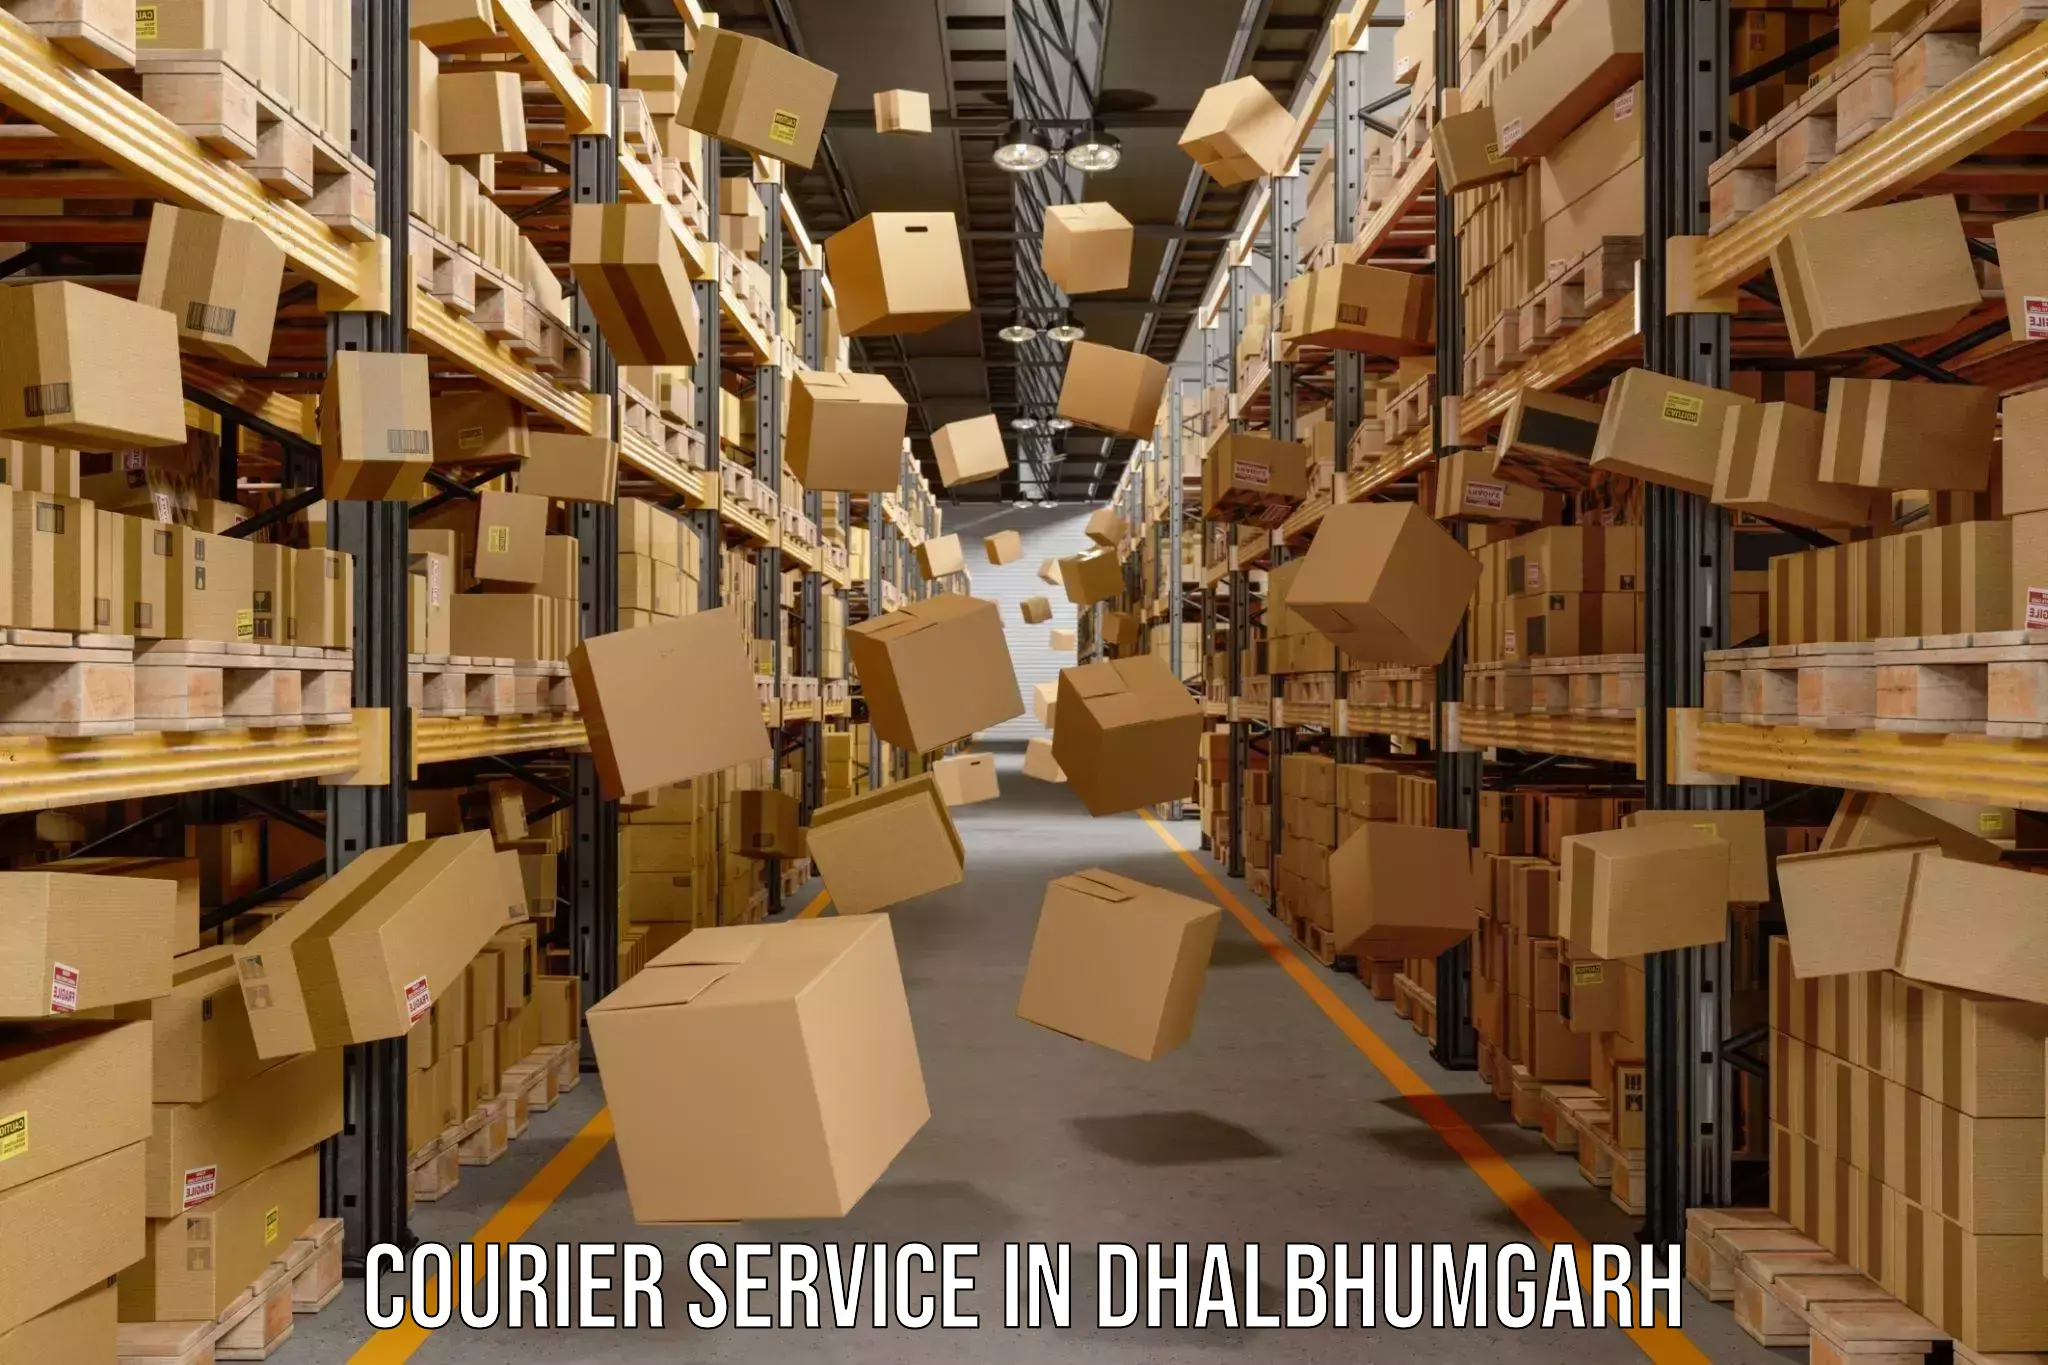 Doorstep delivery service in Dhalbhumgarh